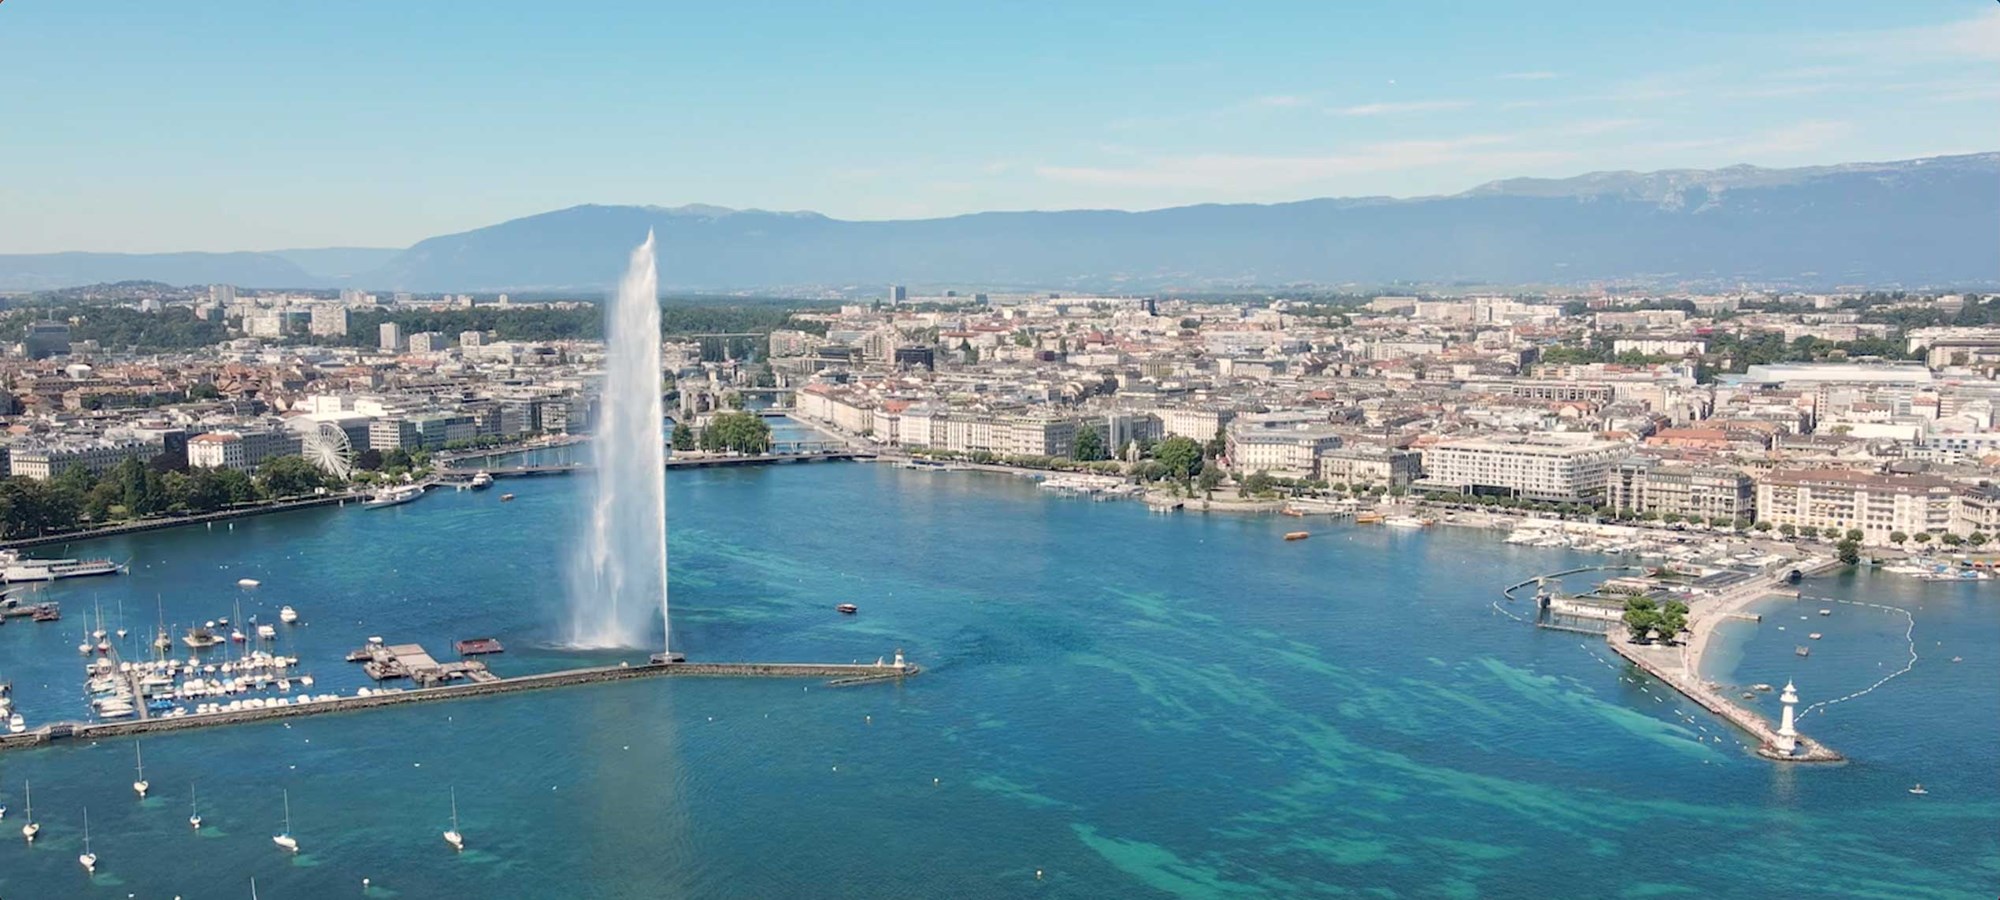 السياحة في جنيف: الجمال الطبيعي والتاريخ الفخور في قلب سويسرا